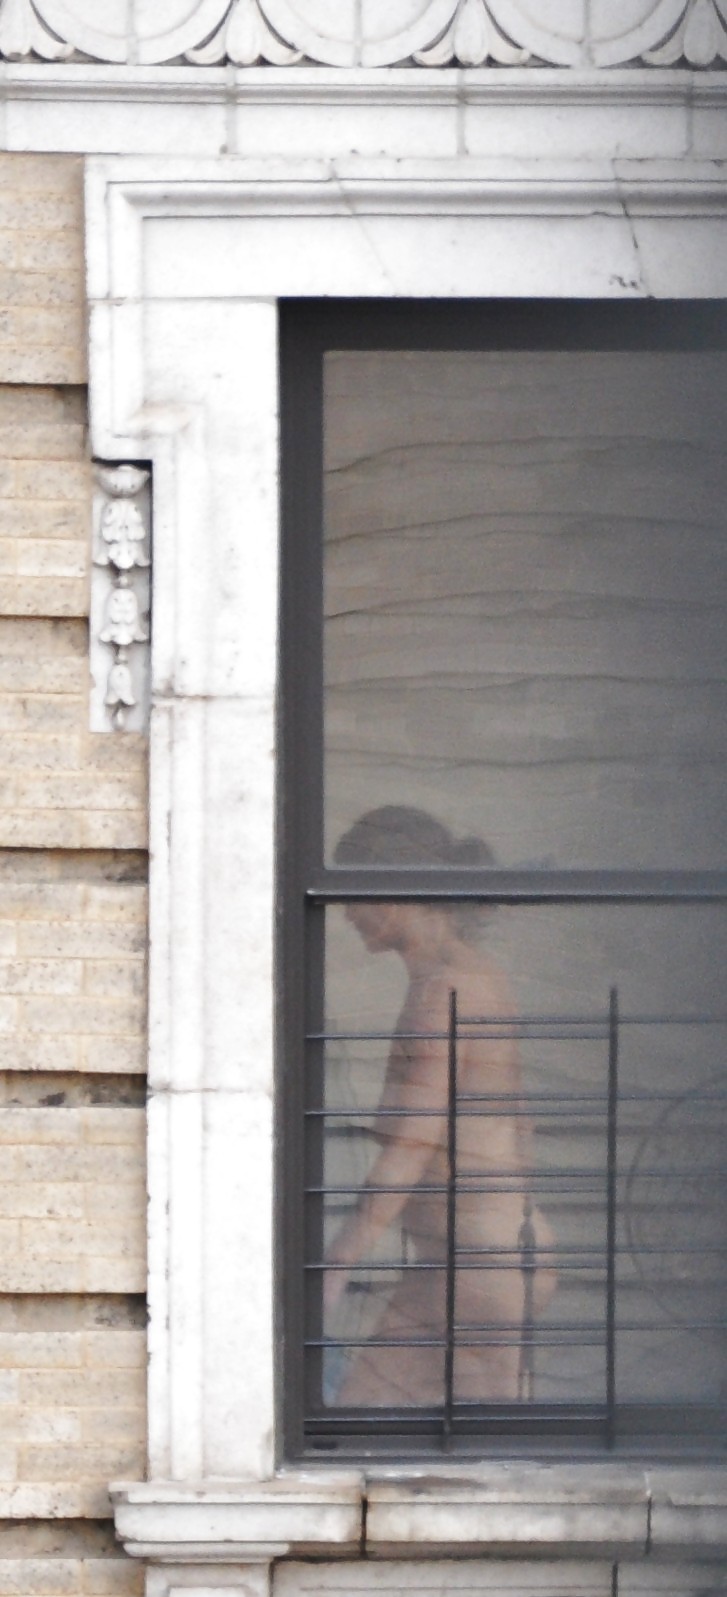 Harlem Naked Neighbor Girl Naked in the Window - New York #5378707